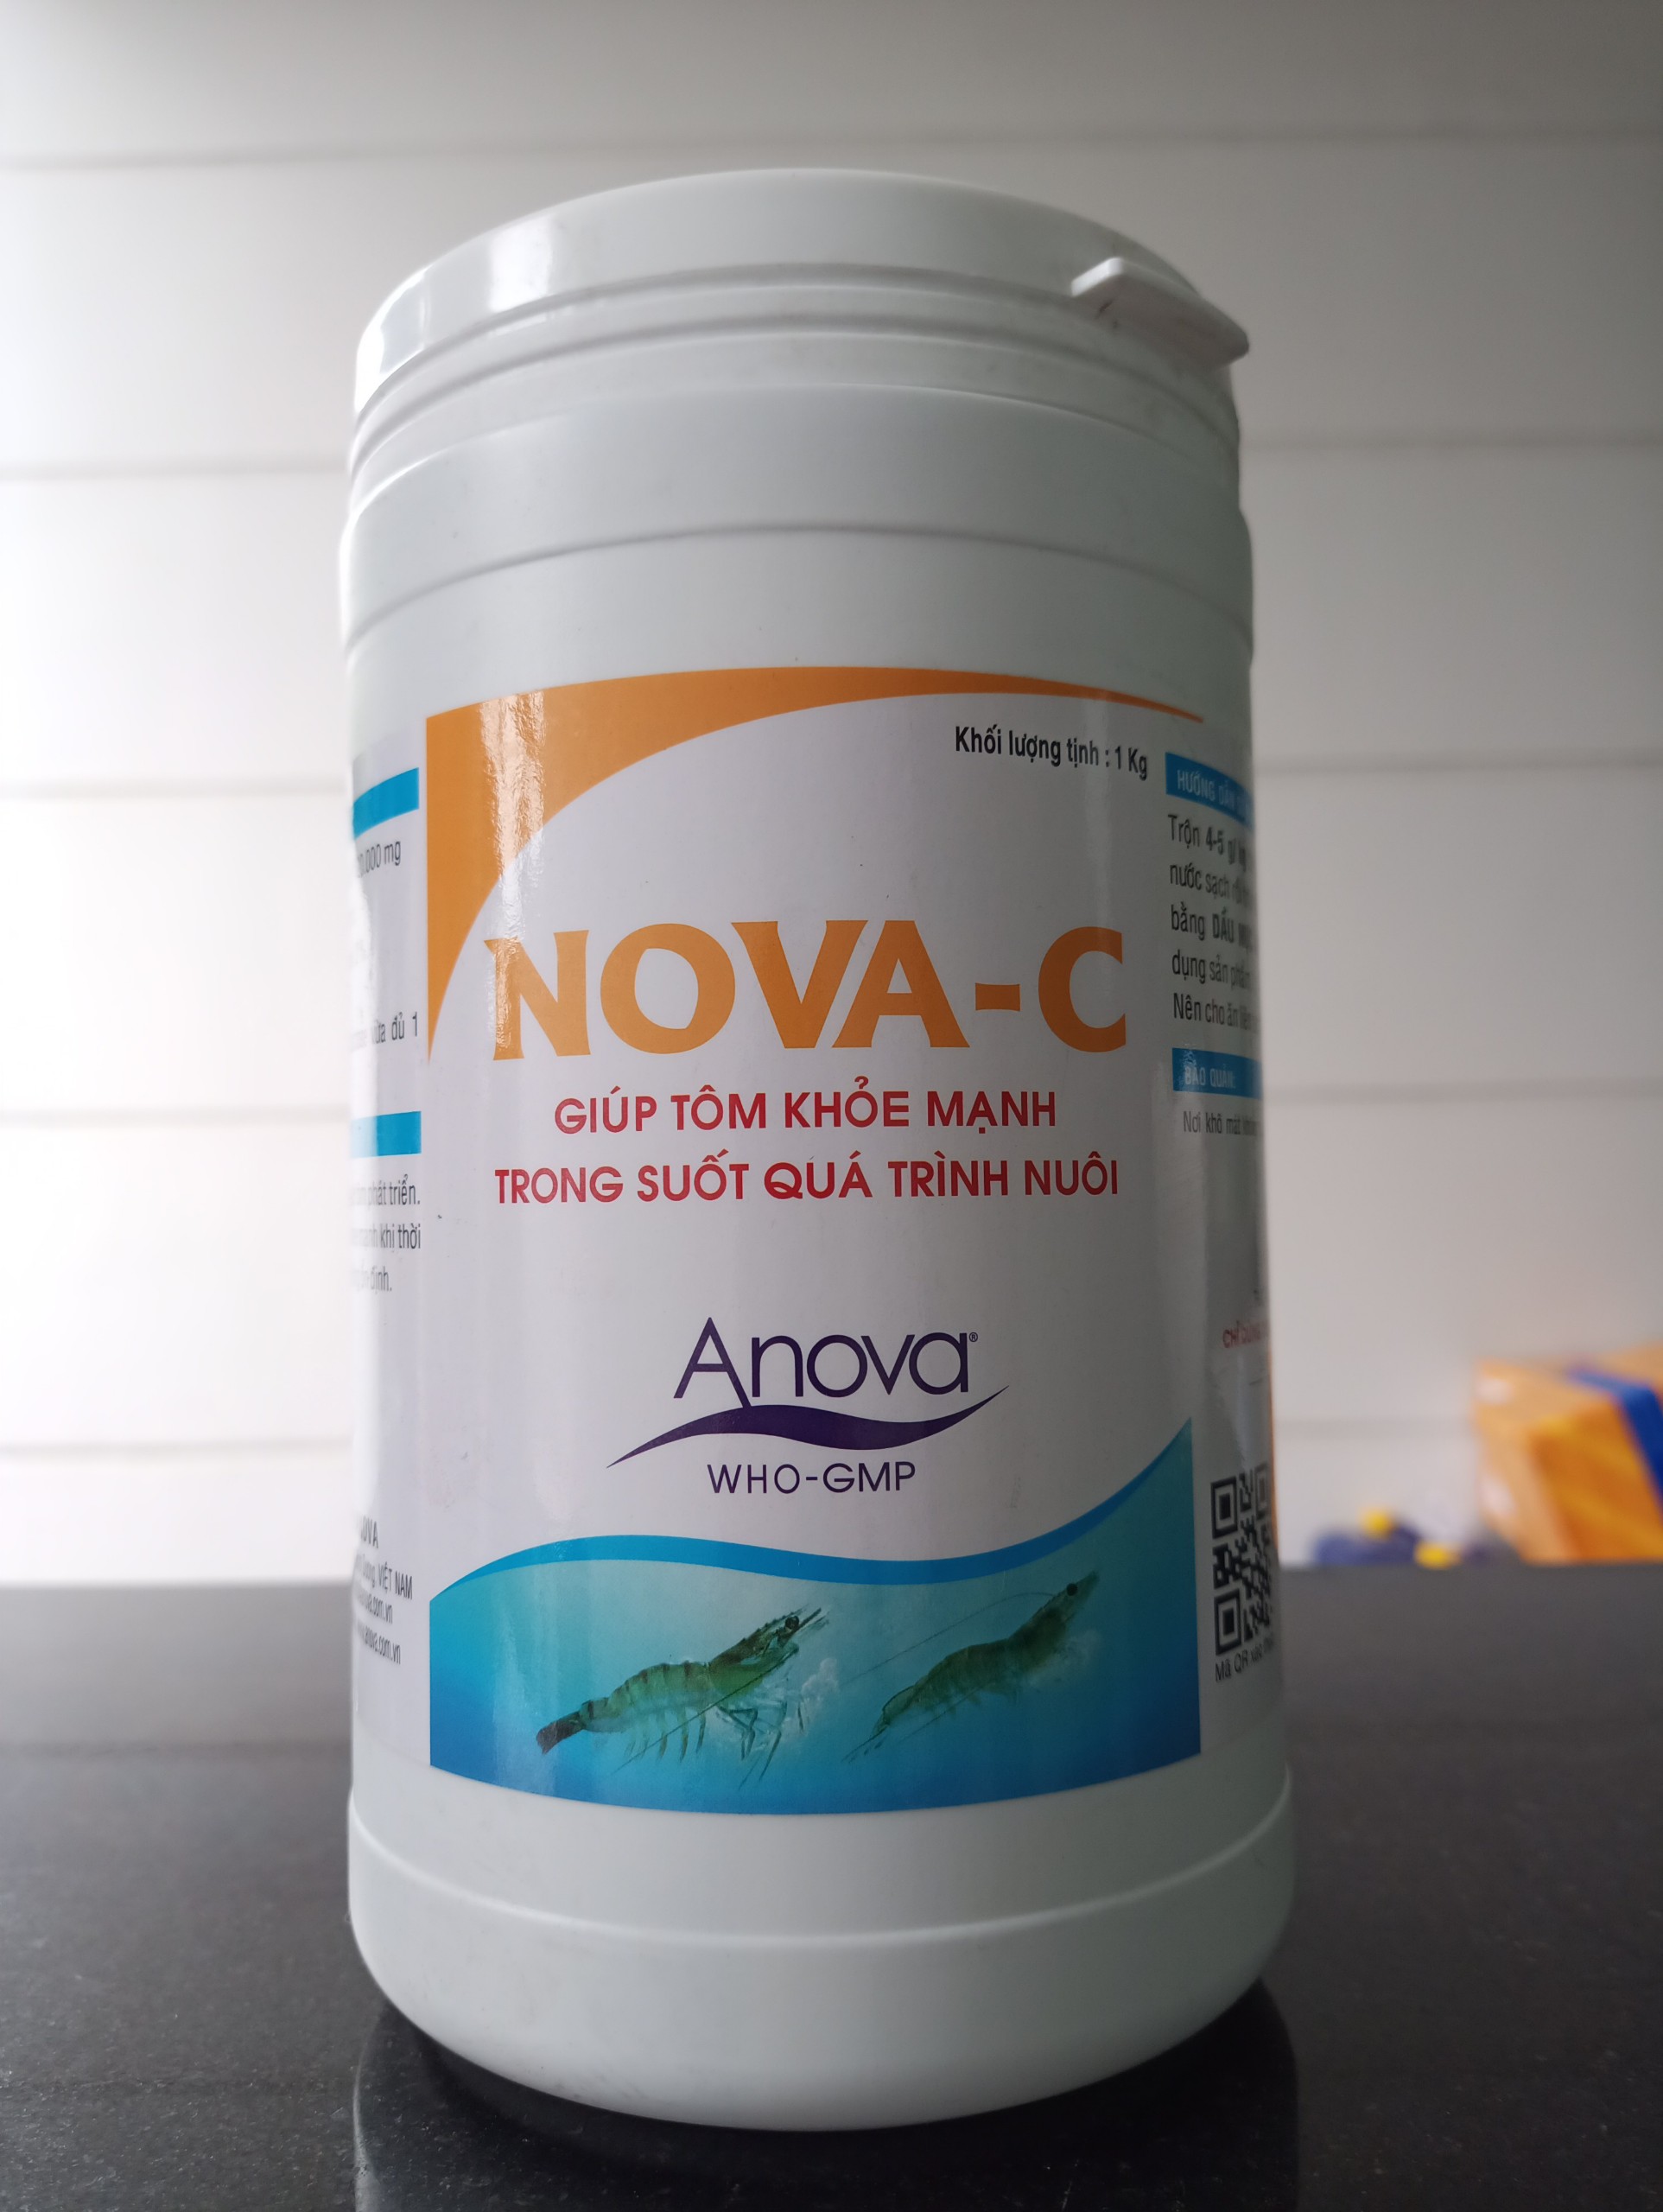 Nova C cho tôm (Anova Nova C) bổ sung khoáng giúp tôm khỏe mạnh, tăng sức đề kháng